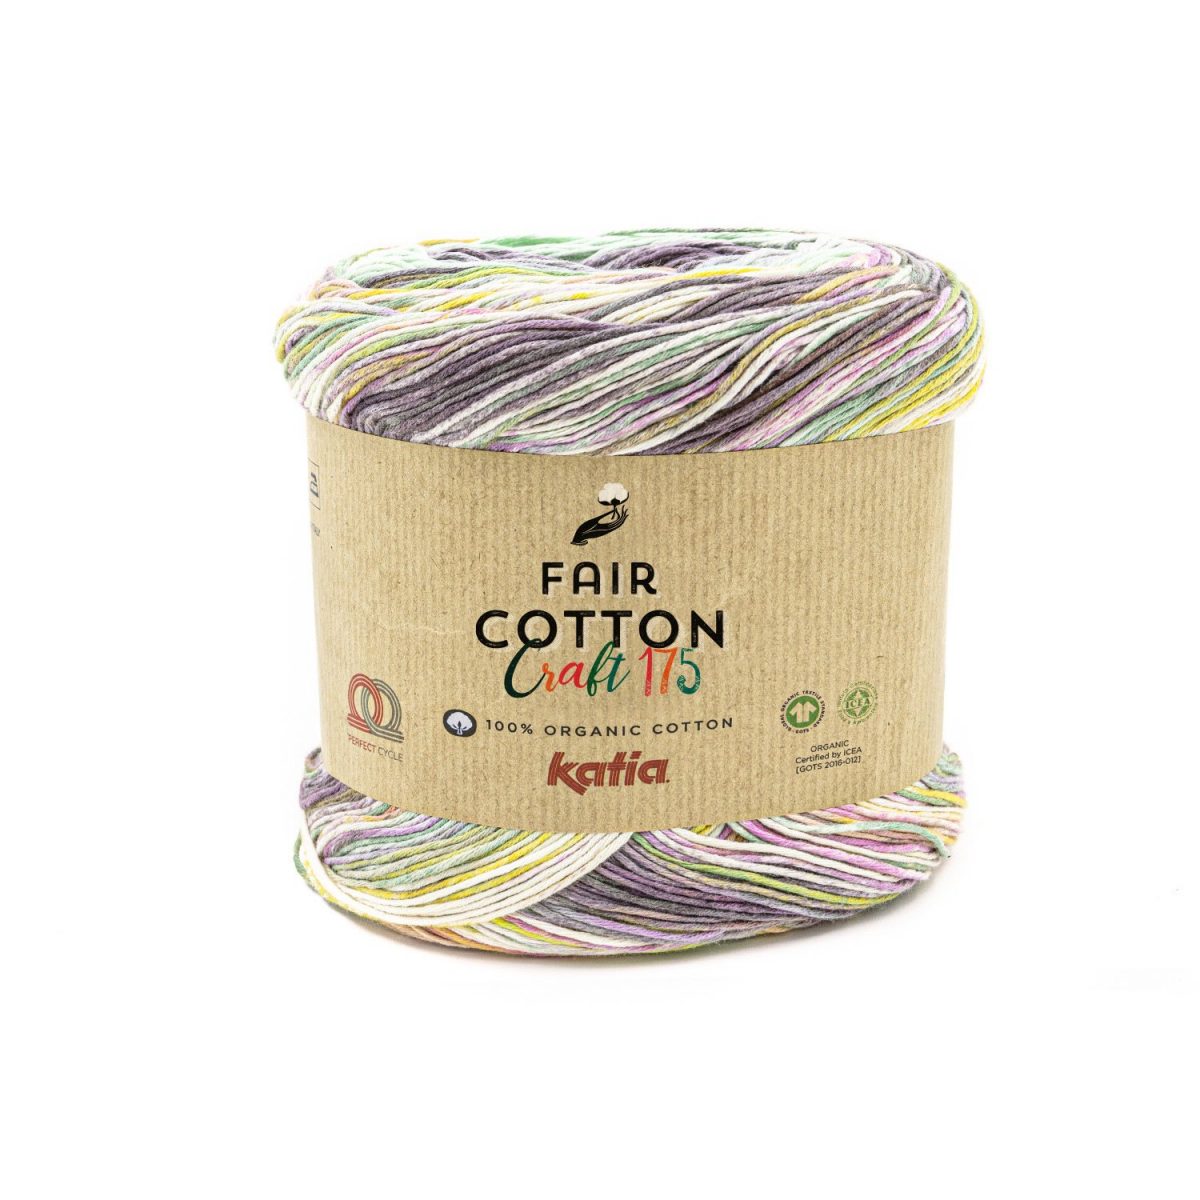 Fair Cotton Craft 175 Katia 